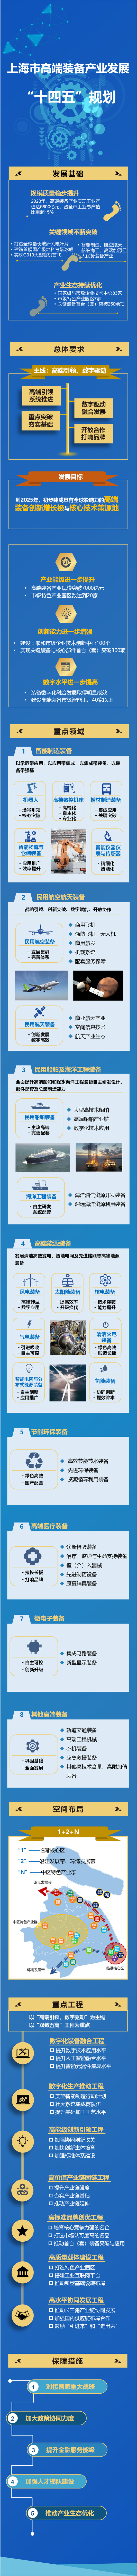 上海高端装备产业发展十四五规划发布产值将破七千亿元